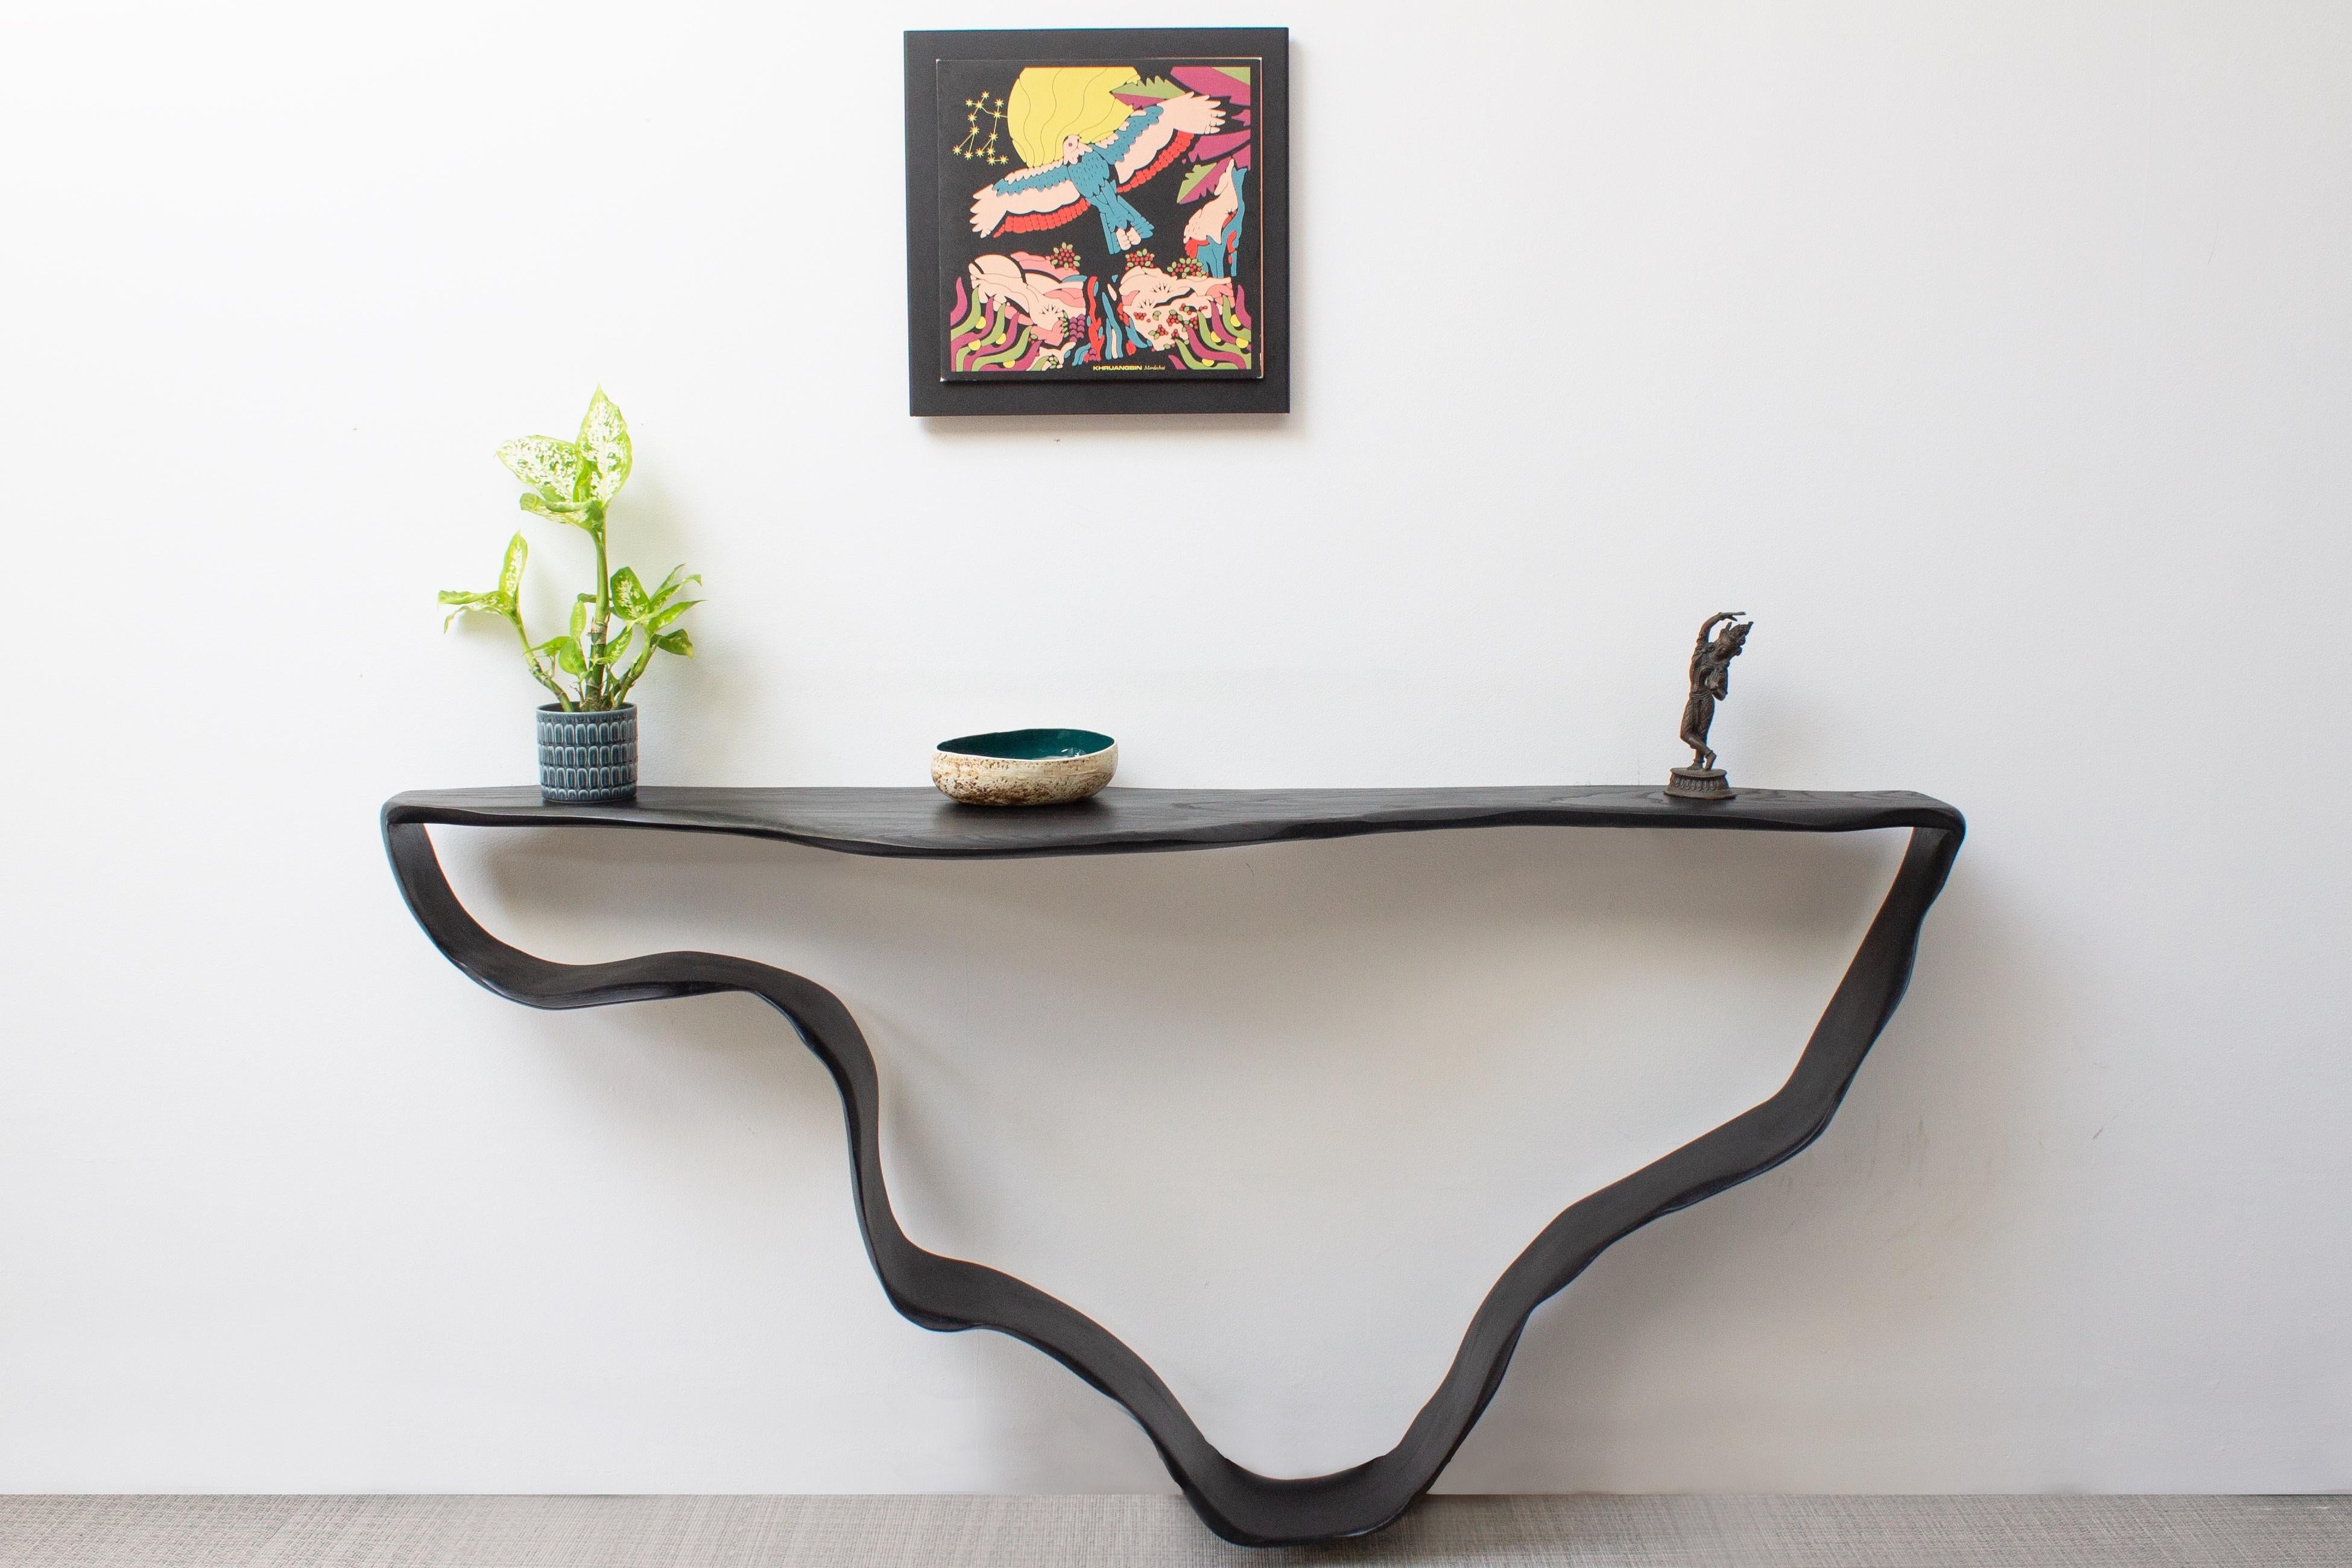 Cette table console sculpturale évoque un sentiment de mystère et de fluidité. Il y a divers éléments tirés du bois flotté érodé et des mouvements fluides et lisses d'un ruban.

Il a été conçu de telle sorte que nous pensons que la pièce entière est